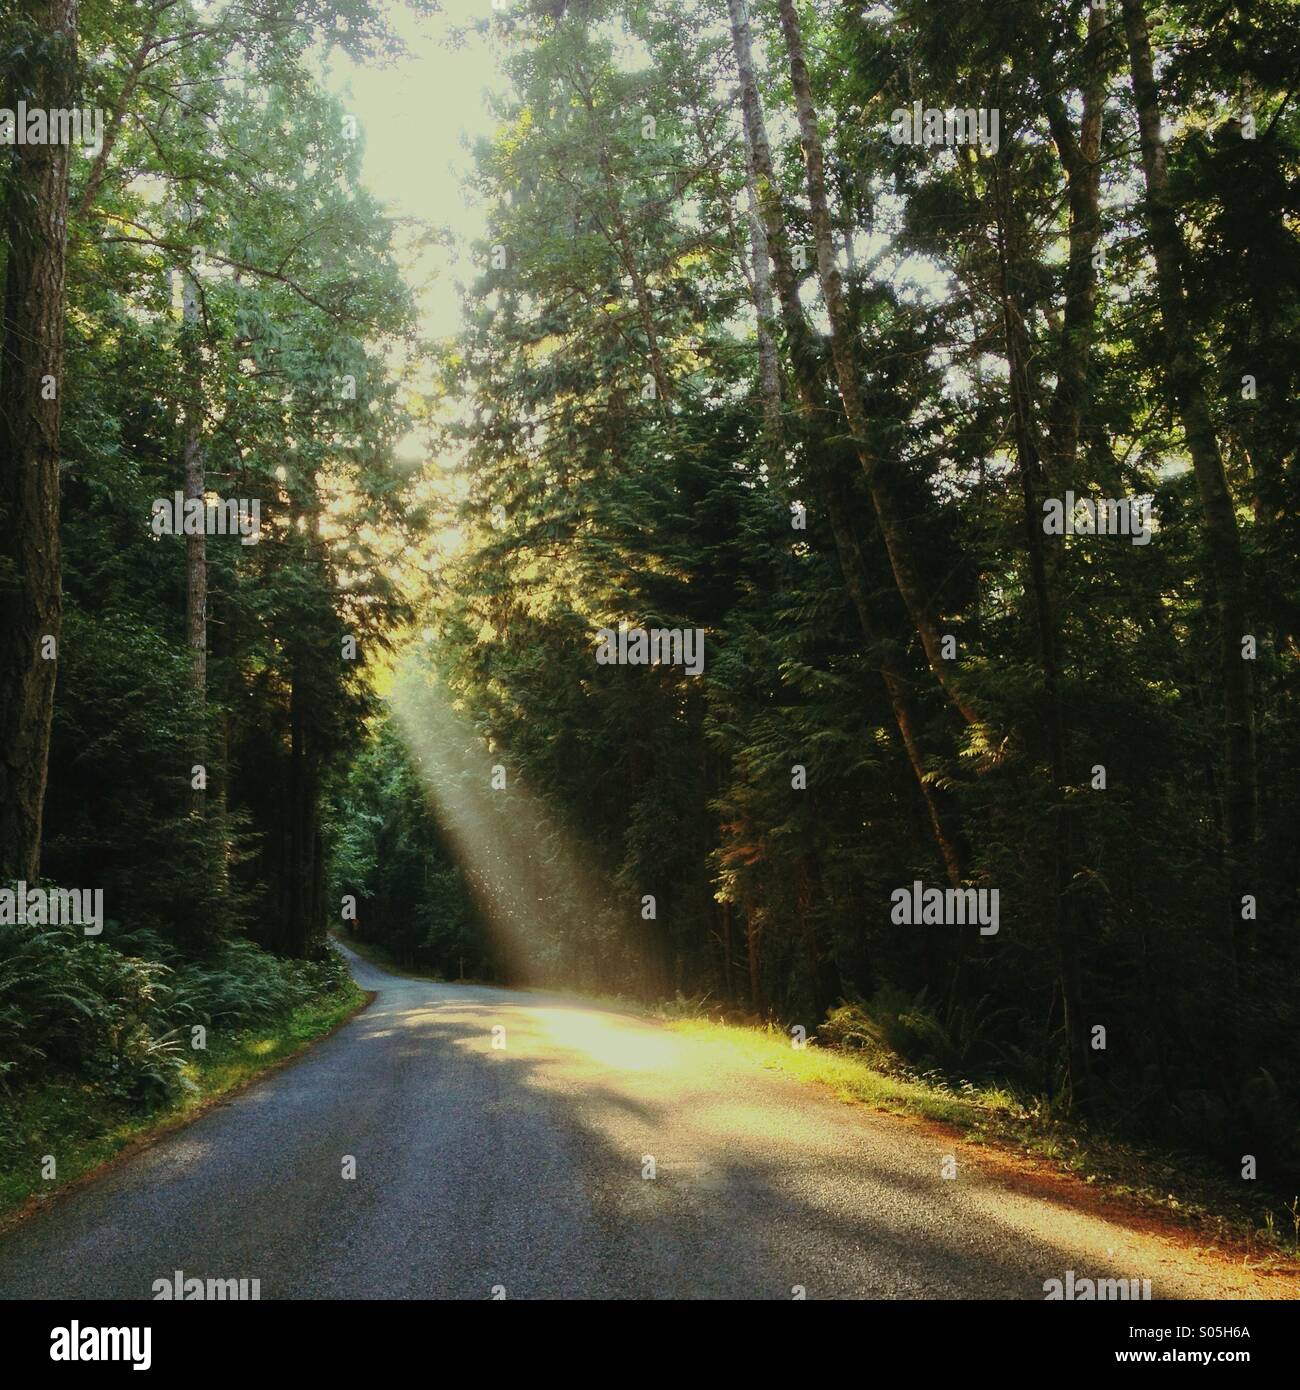 Straße durch den Wald mit warmem späten Nachmittag Licht strahlt durch die Bäume, fliegende Insekten zu beleuchten. Stockfoto